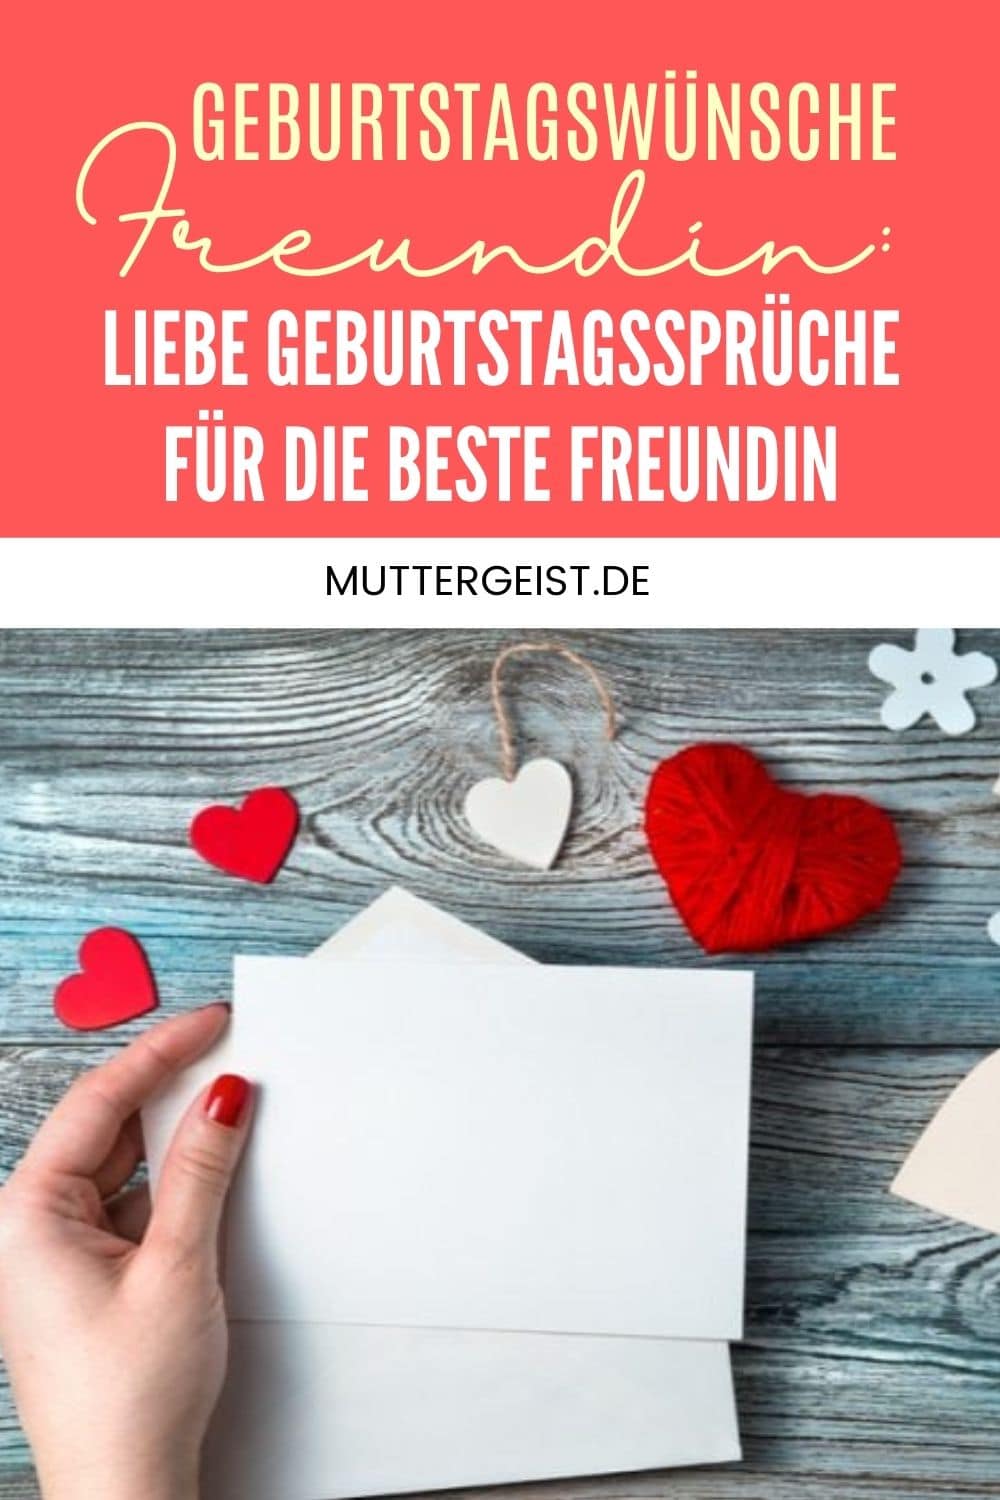 Geburtstagswünsche Freundin – Liebe Geburtstagssprüche Für Die Beste Freundin Pinterest